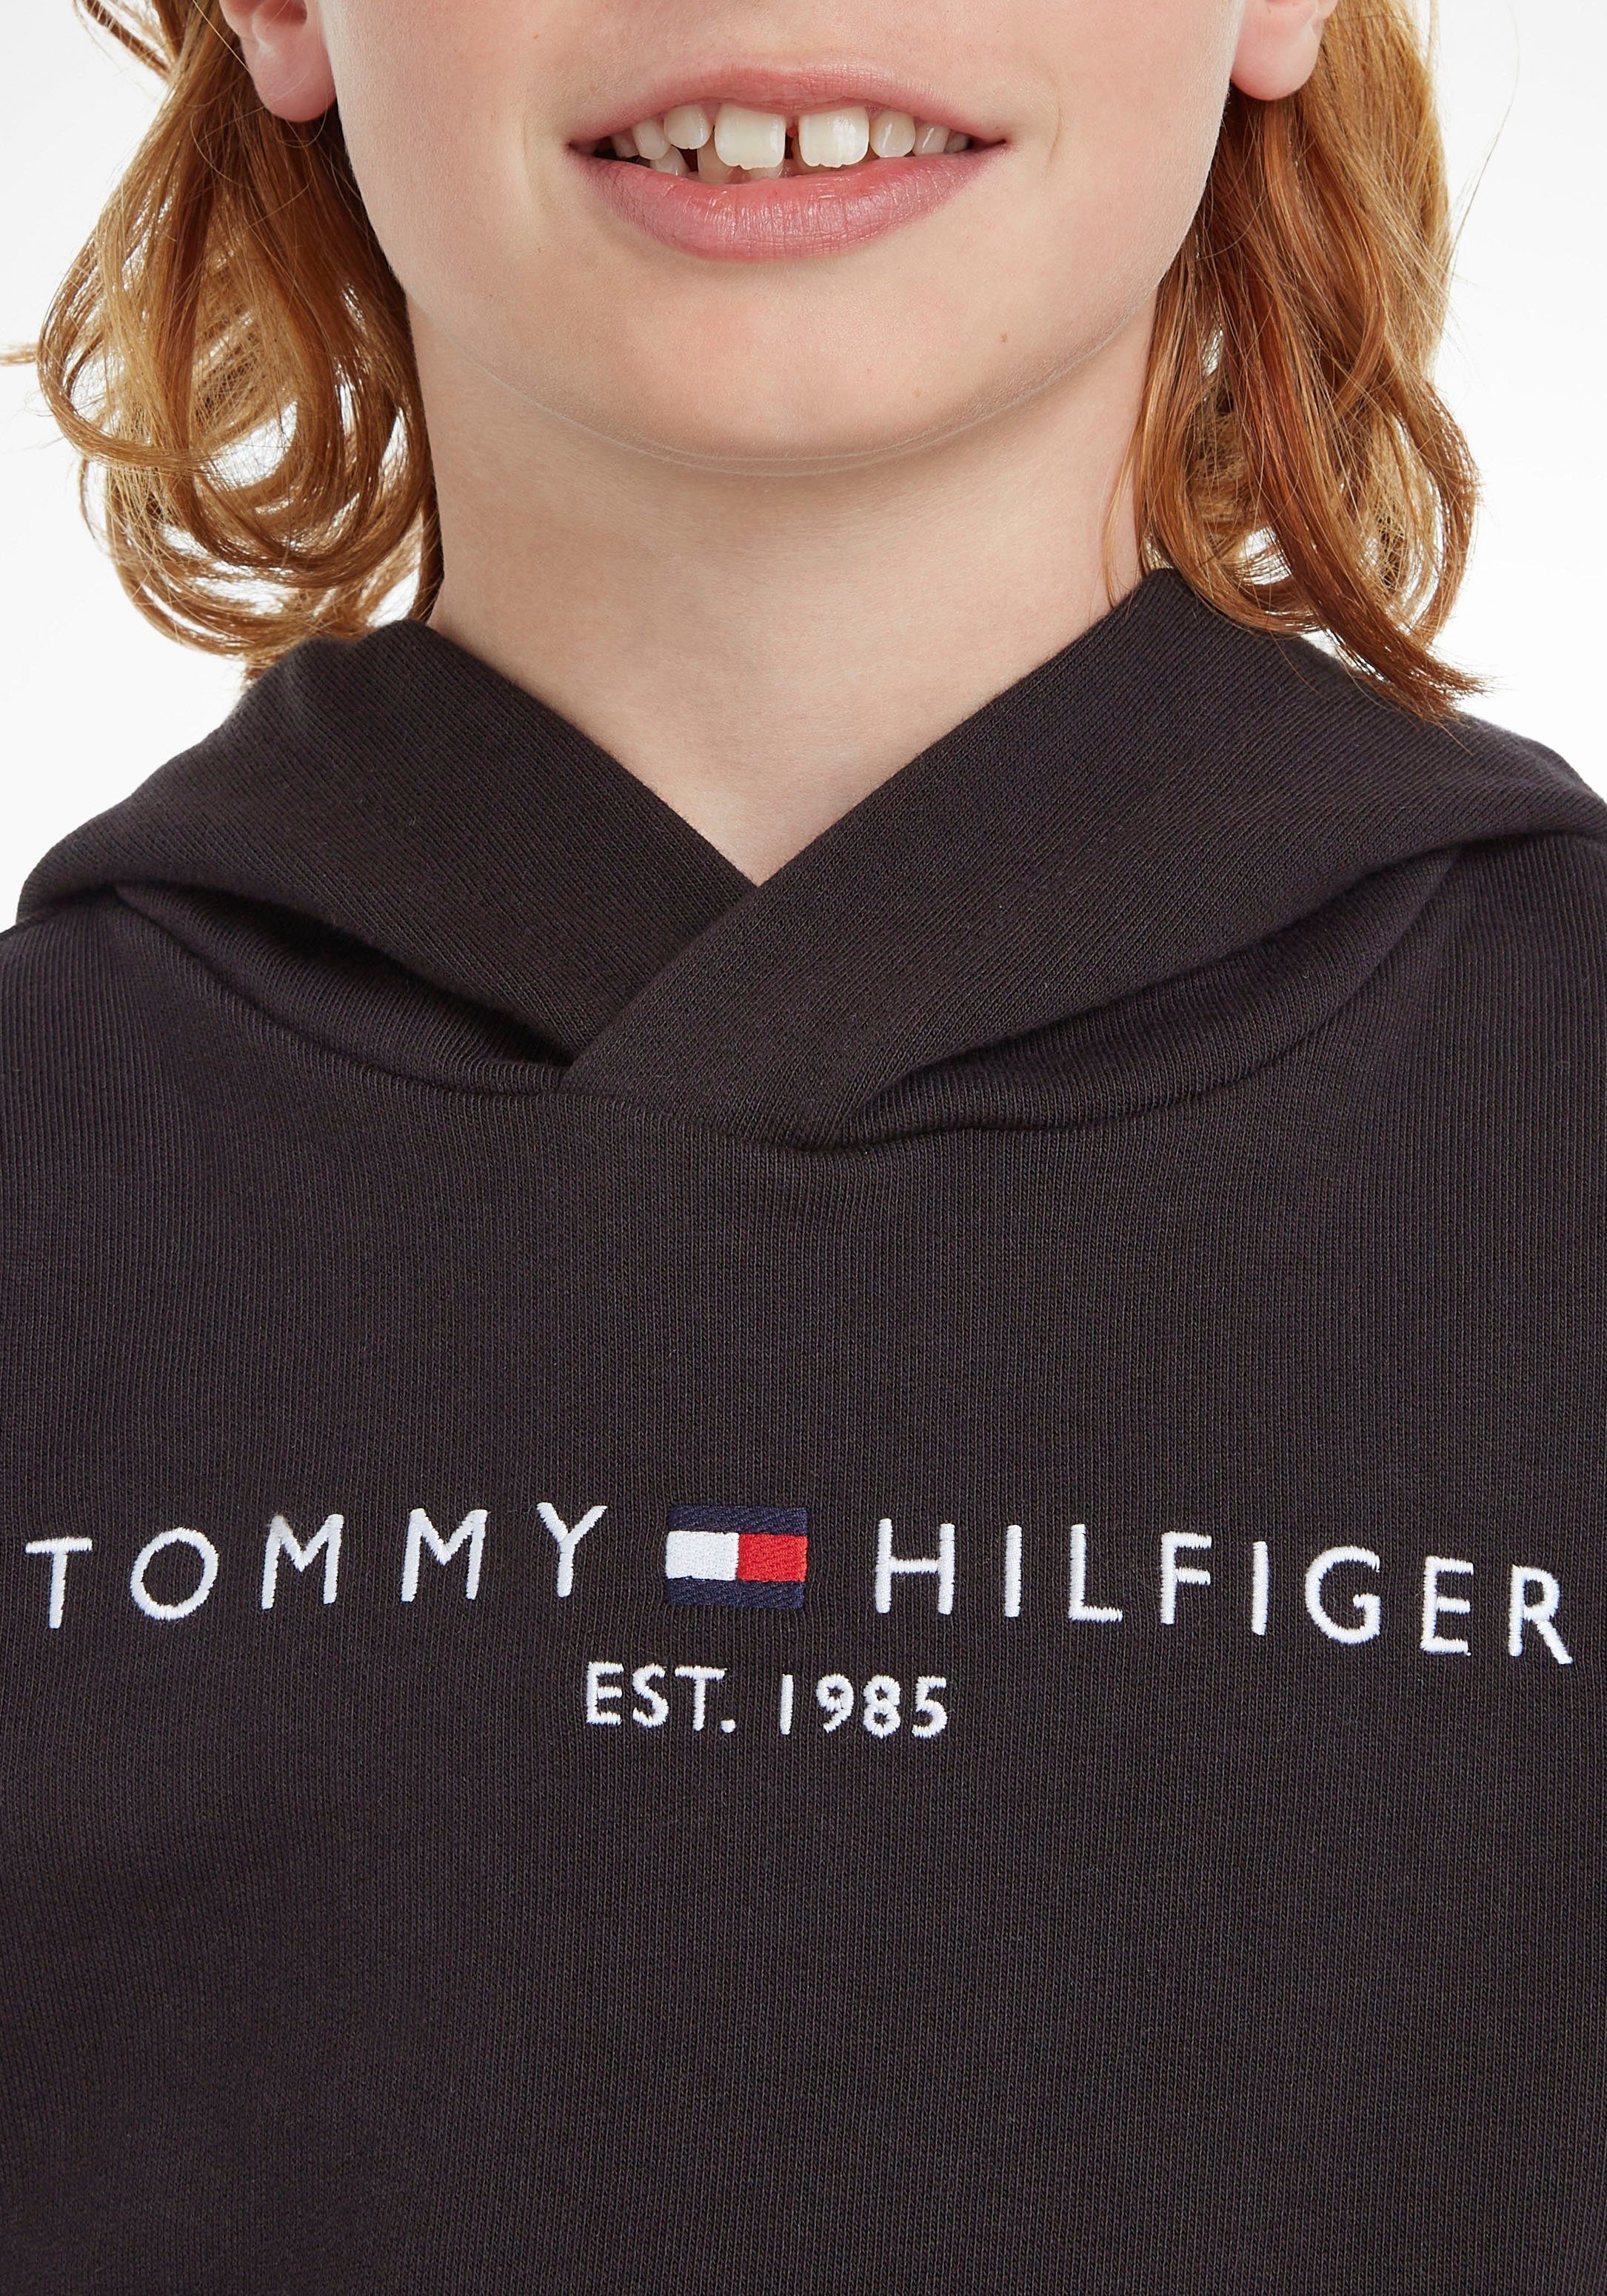 Tommy Hilfiger Kapuzensweatshirt ESSENTIAL Kids HOODIE Junior Kinder Mädchen MiniMe,für und Jungen